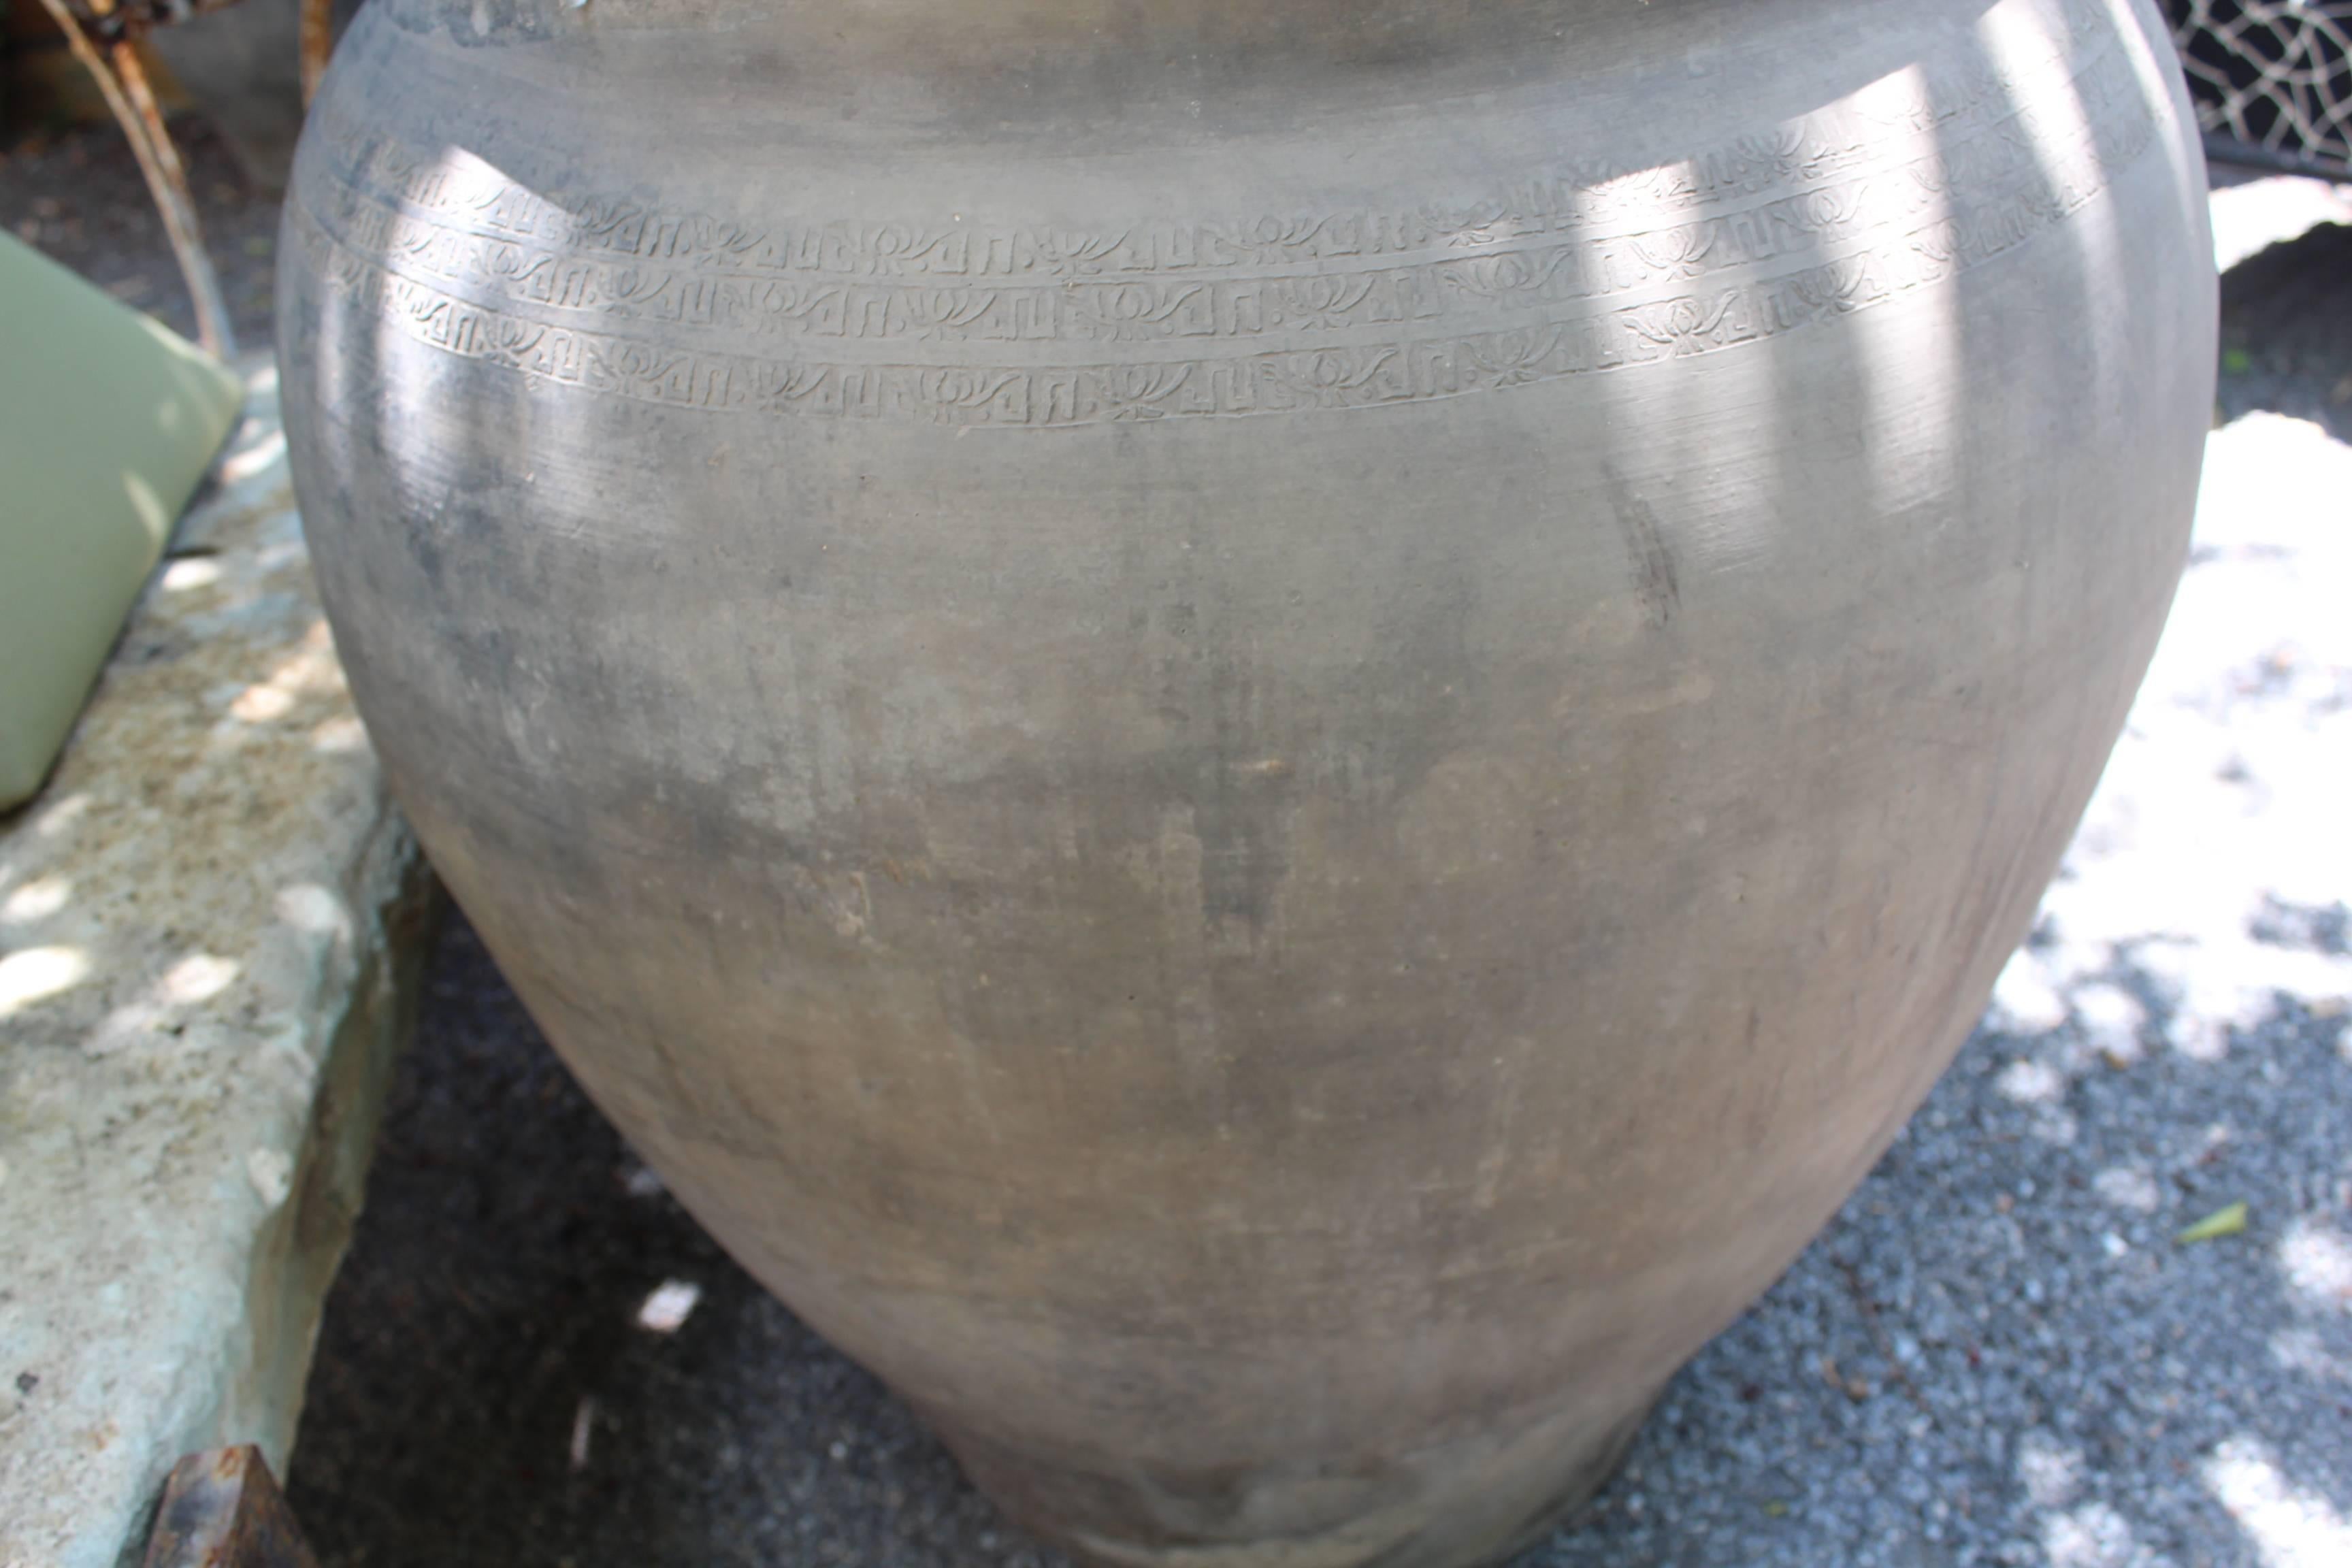 Antique terracotta storage jar.